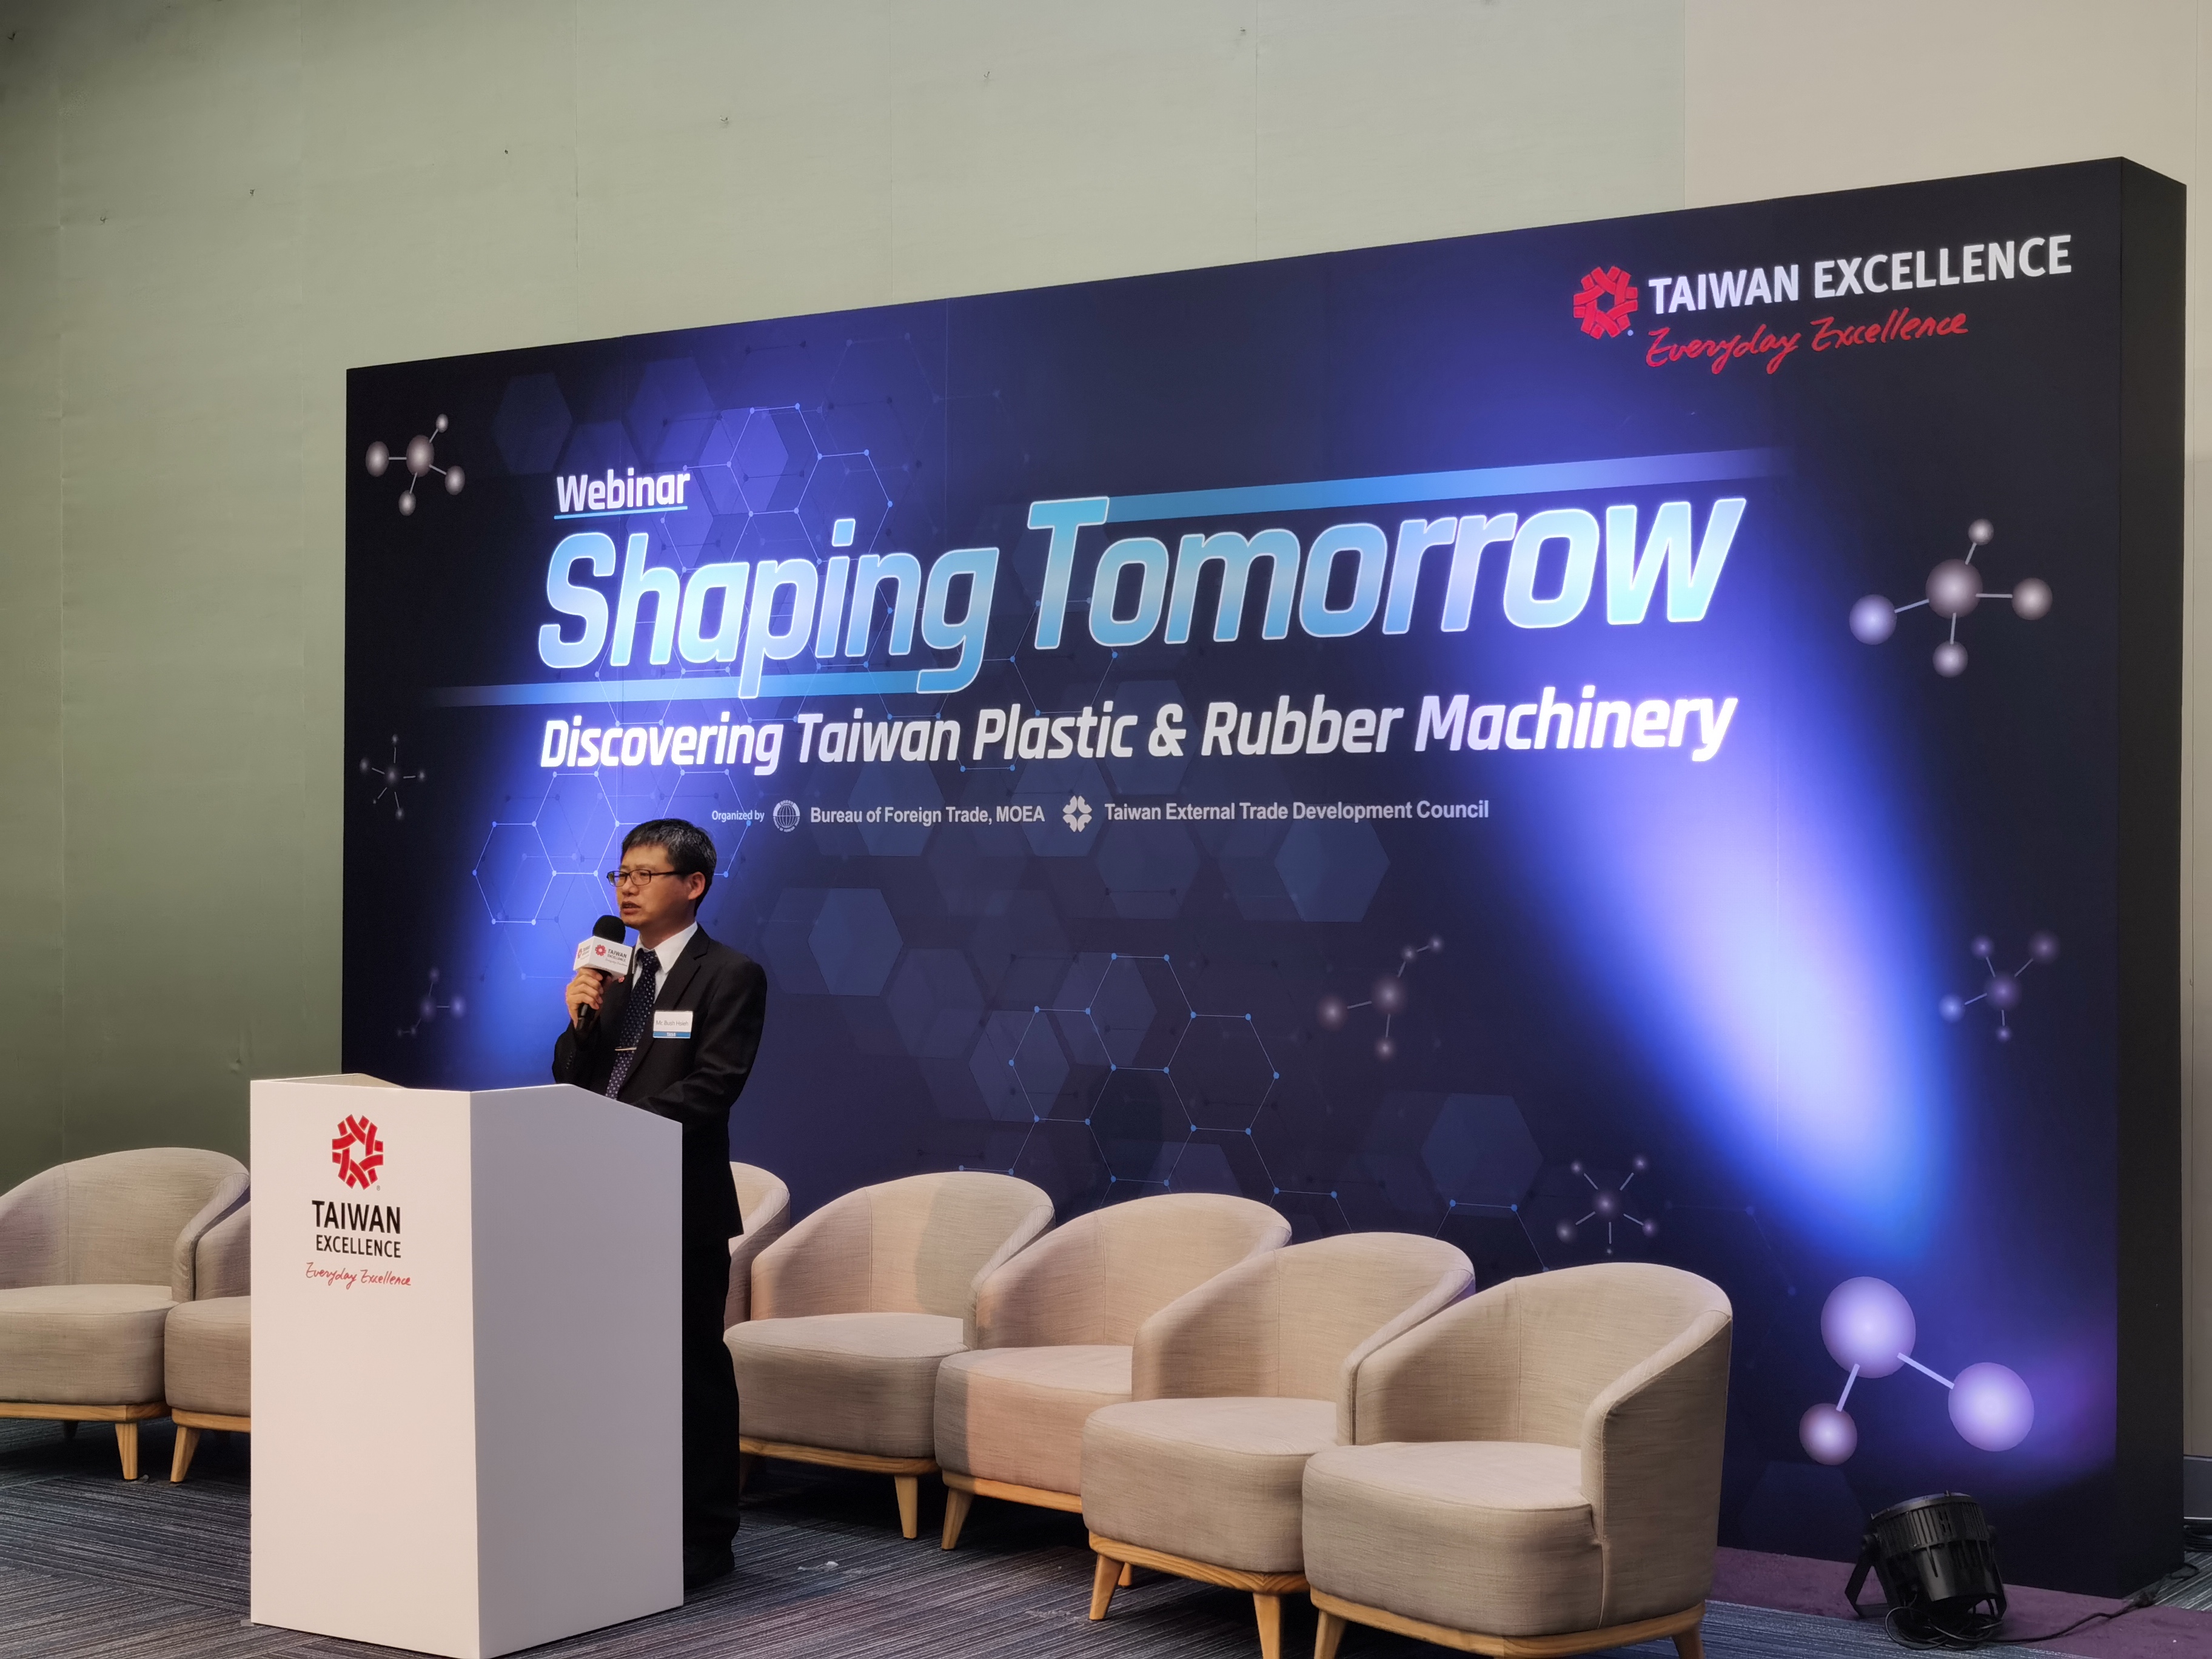 「塑」造未來趨勢台灣精品橡塑膠機械線上記者會